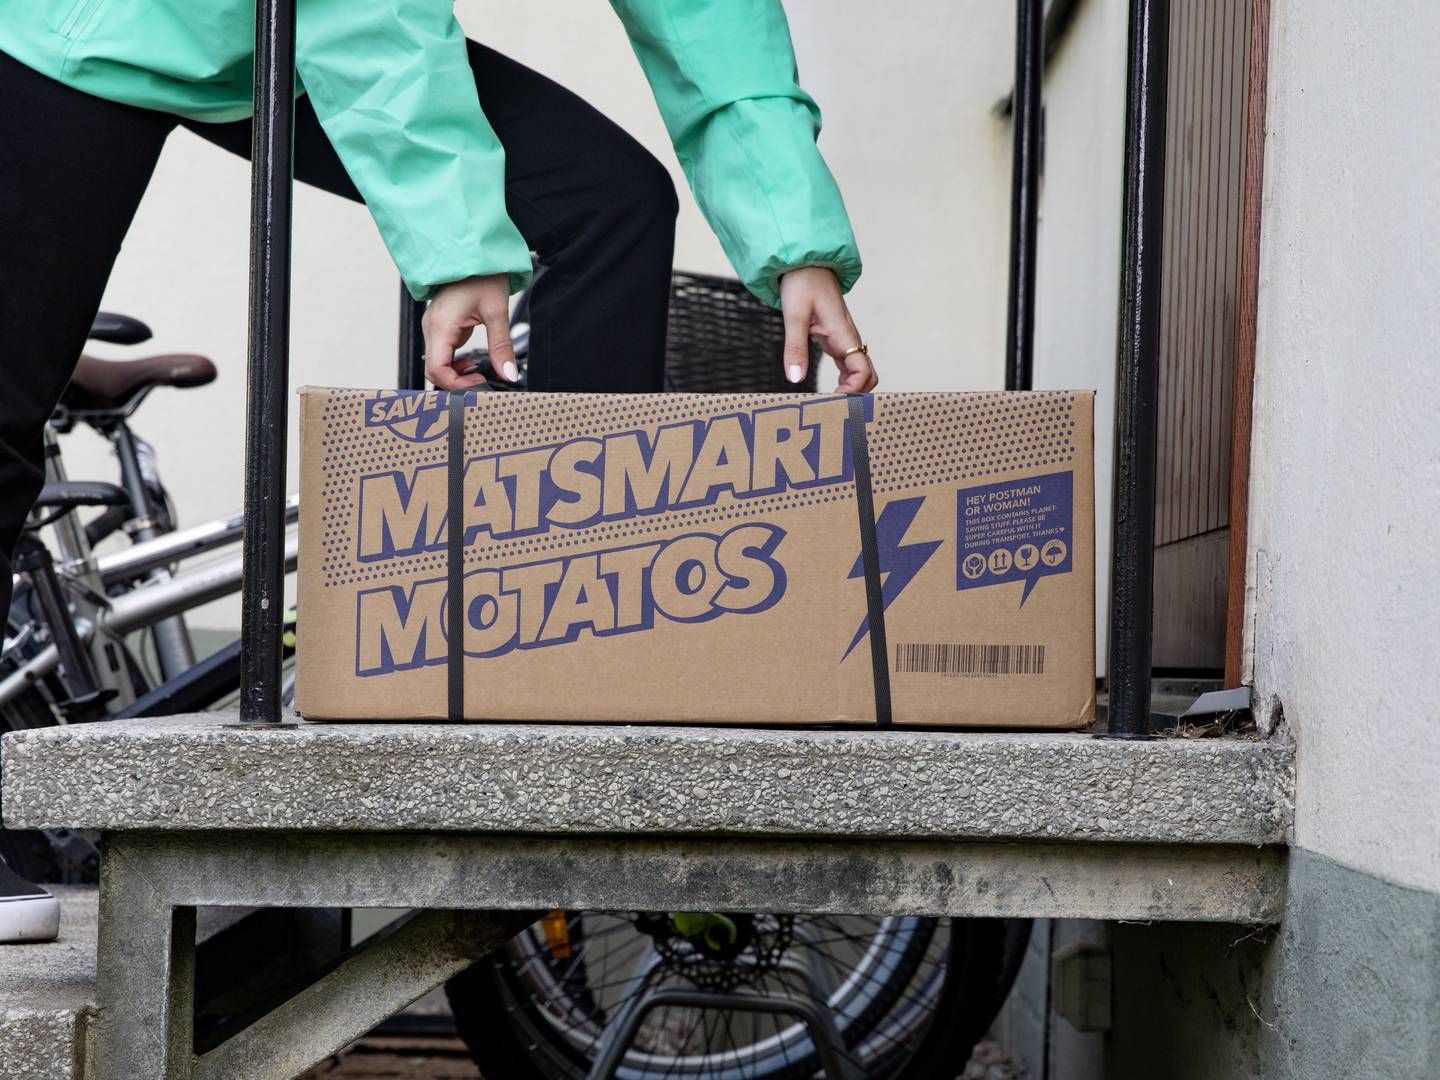 I Danmark har Motatos.dk solgt overskudsvarer siden 2019, og det har siden 2021 været firmaets mål at øge kendskabet blandt den danske befolkning. | Foto: PR / Motatos